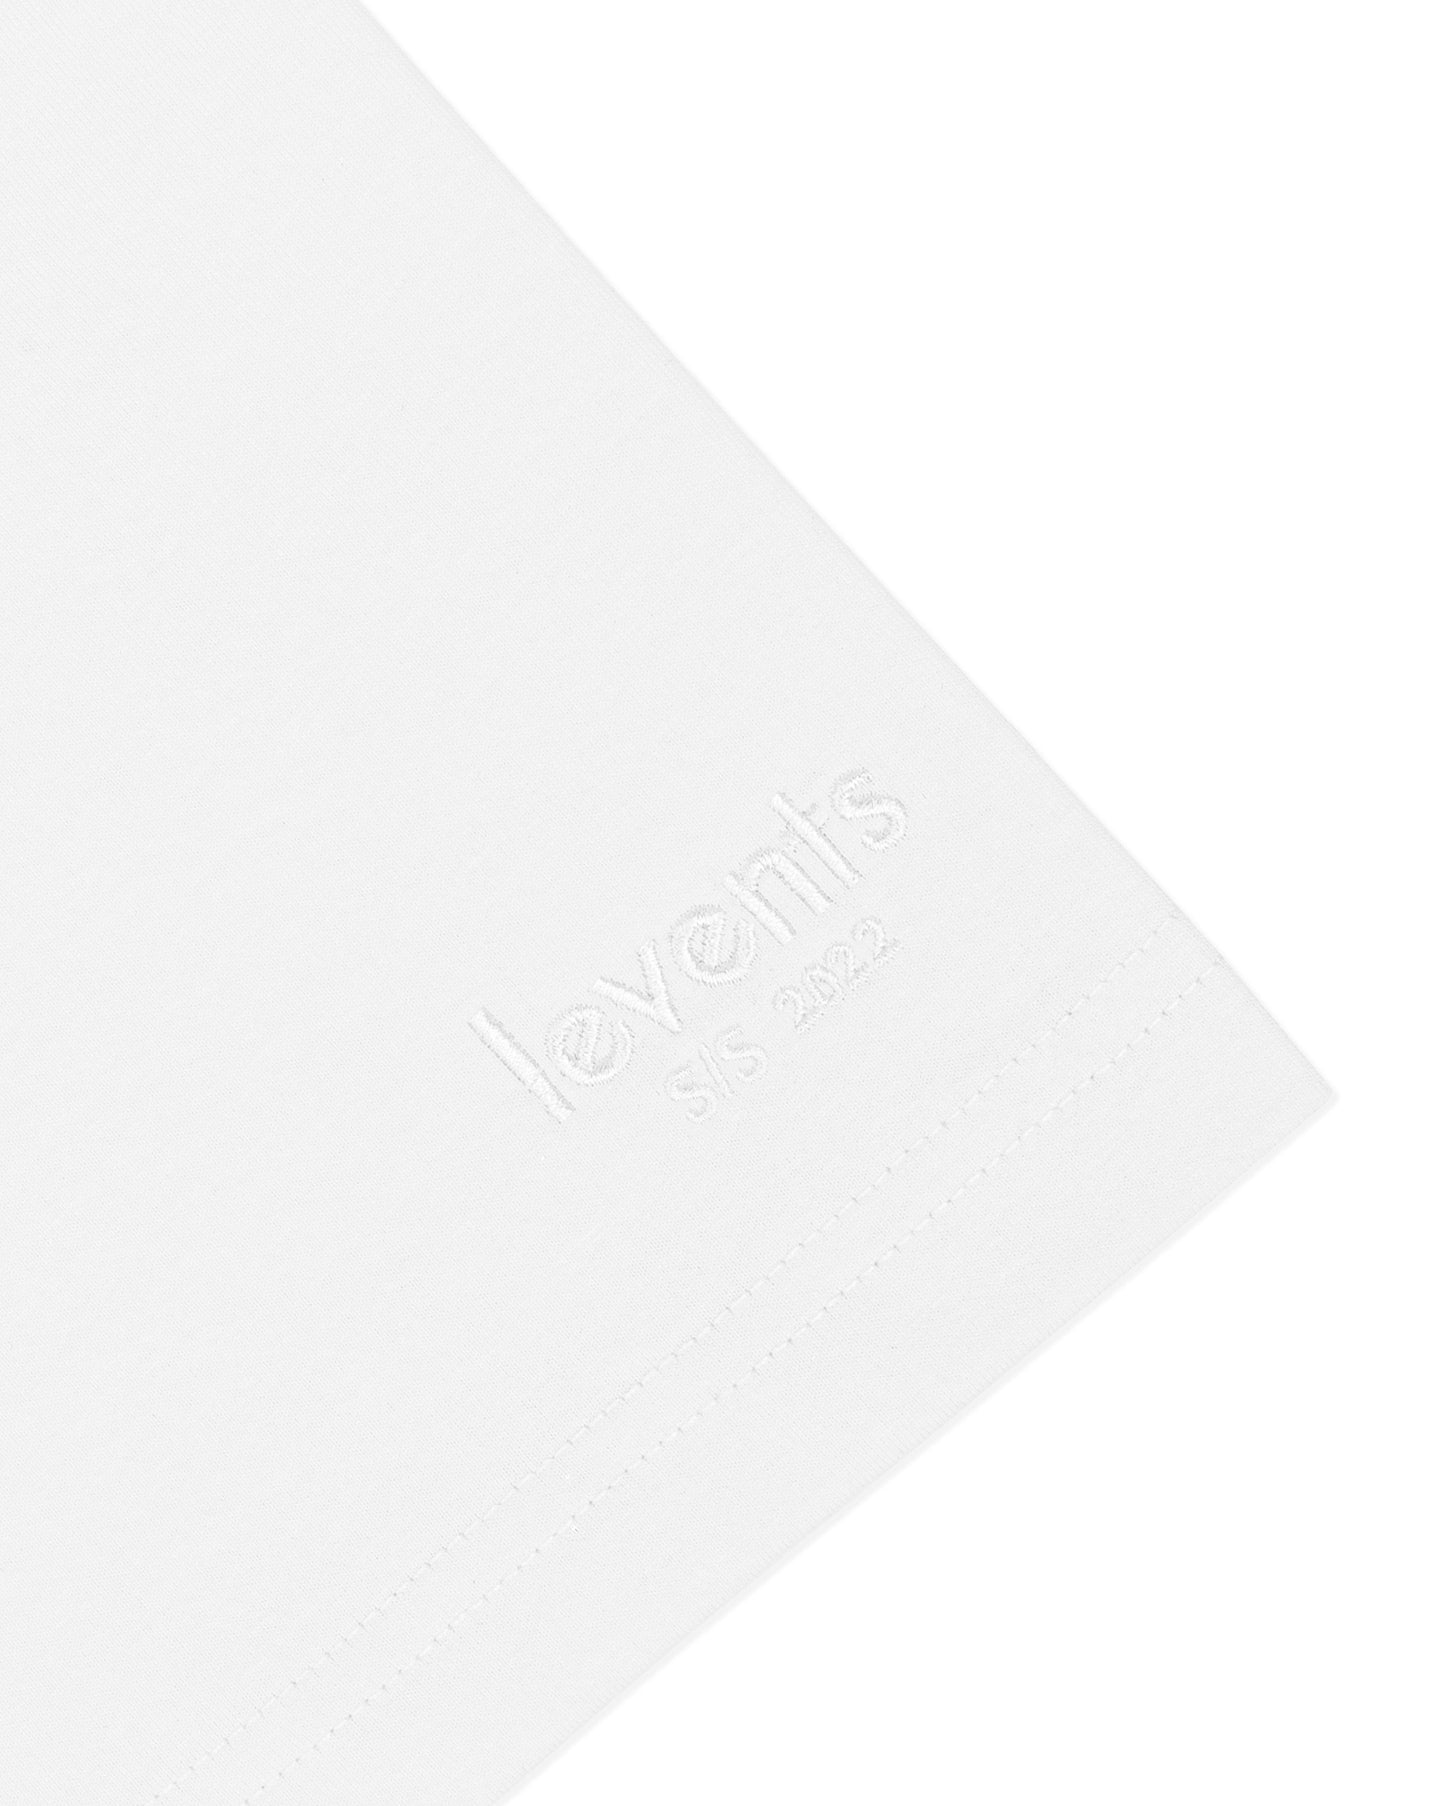 Levents® Mini Popular Polo/ White